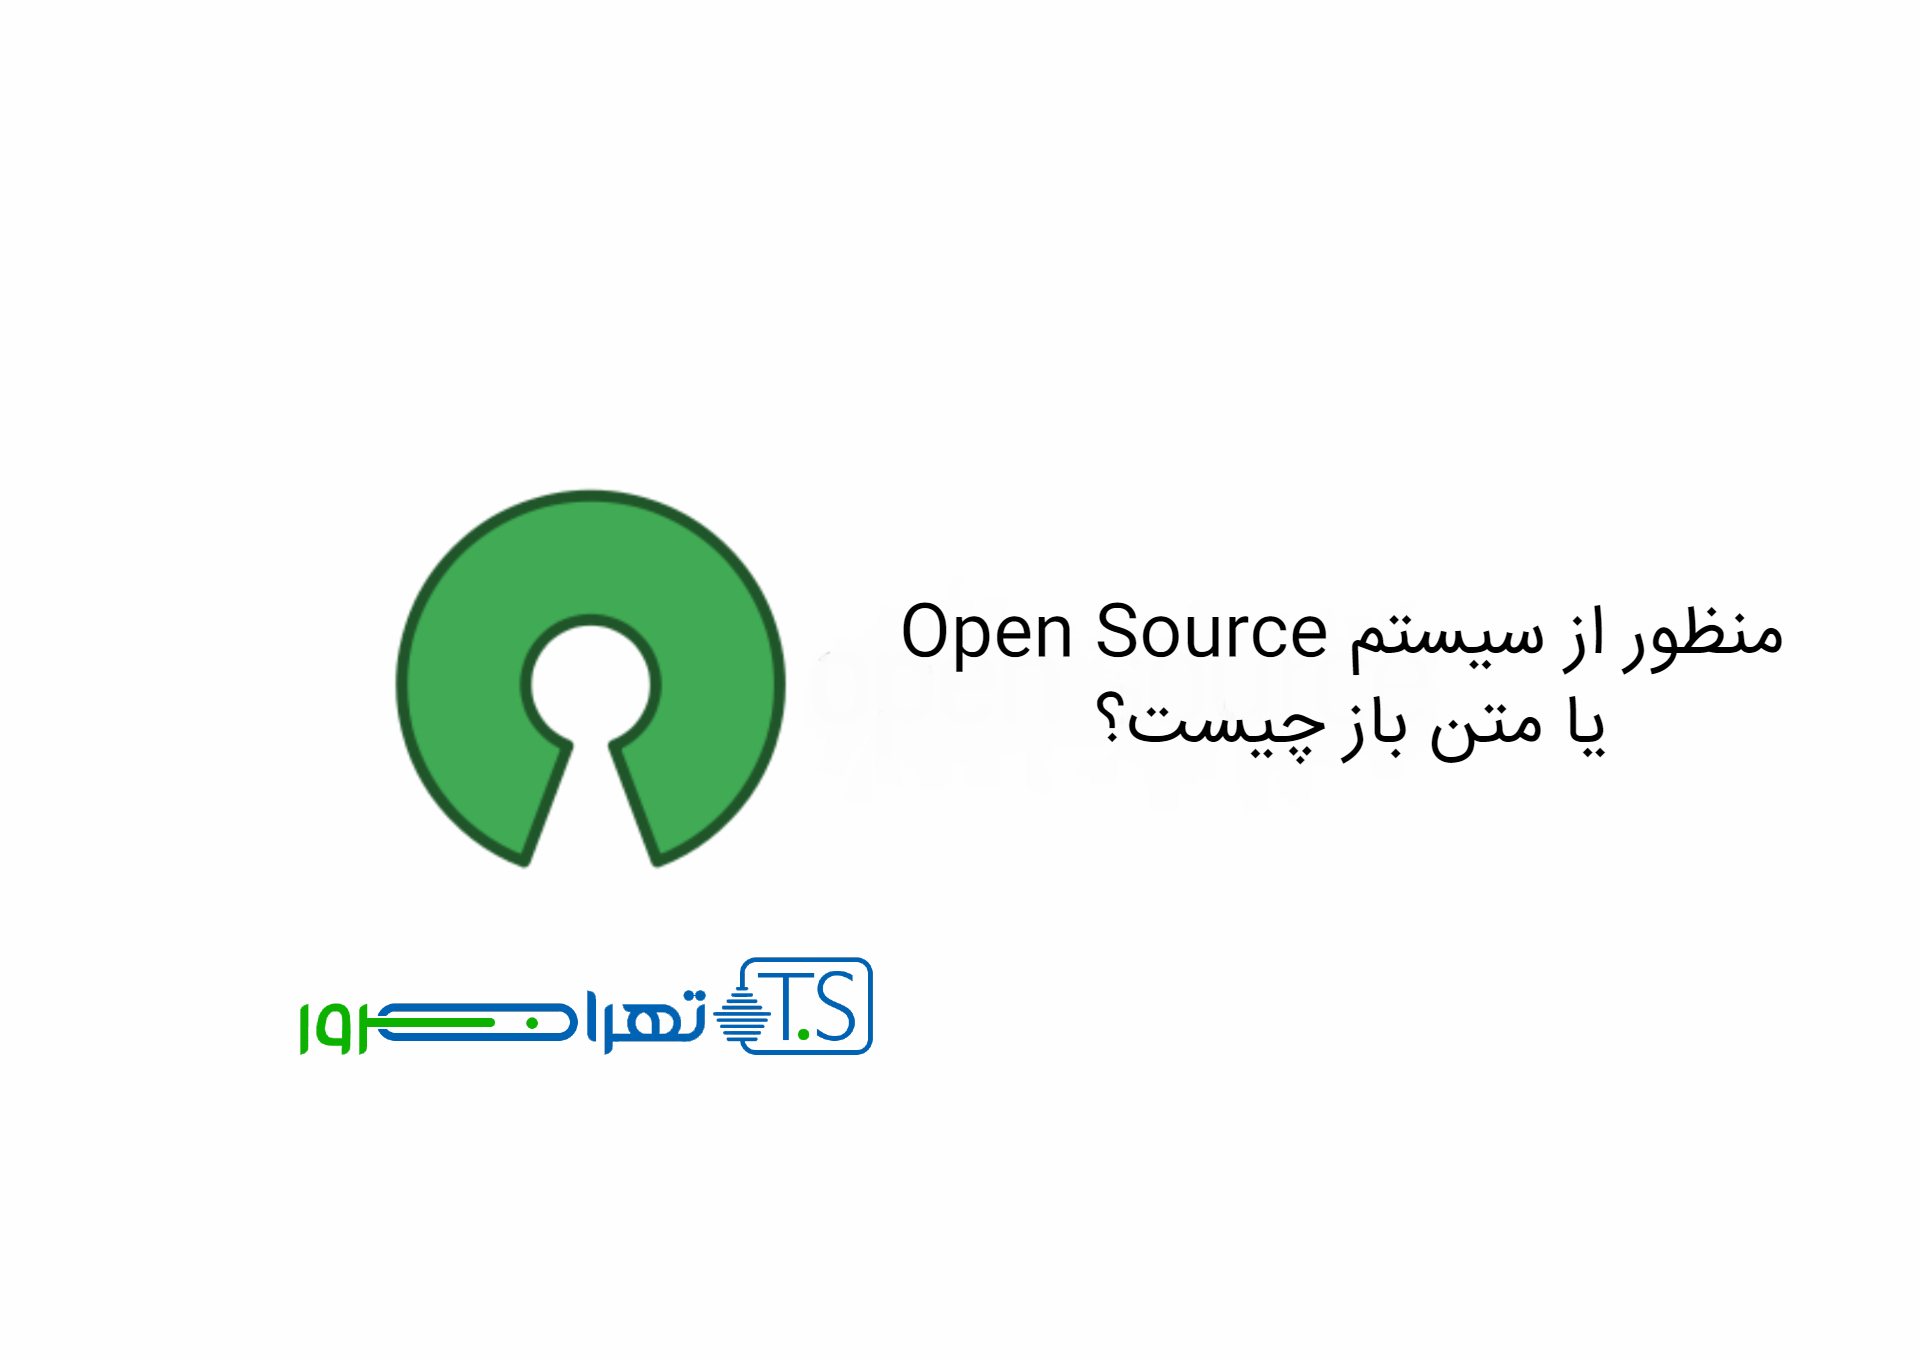 منظور از سیستم Open Source یا متن باز چیست؟